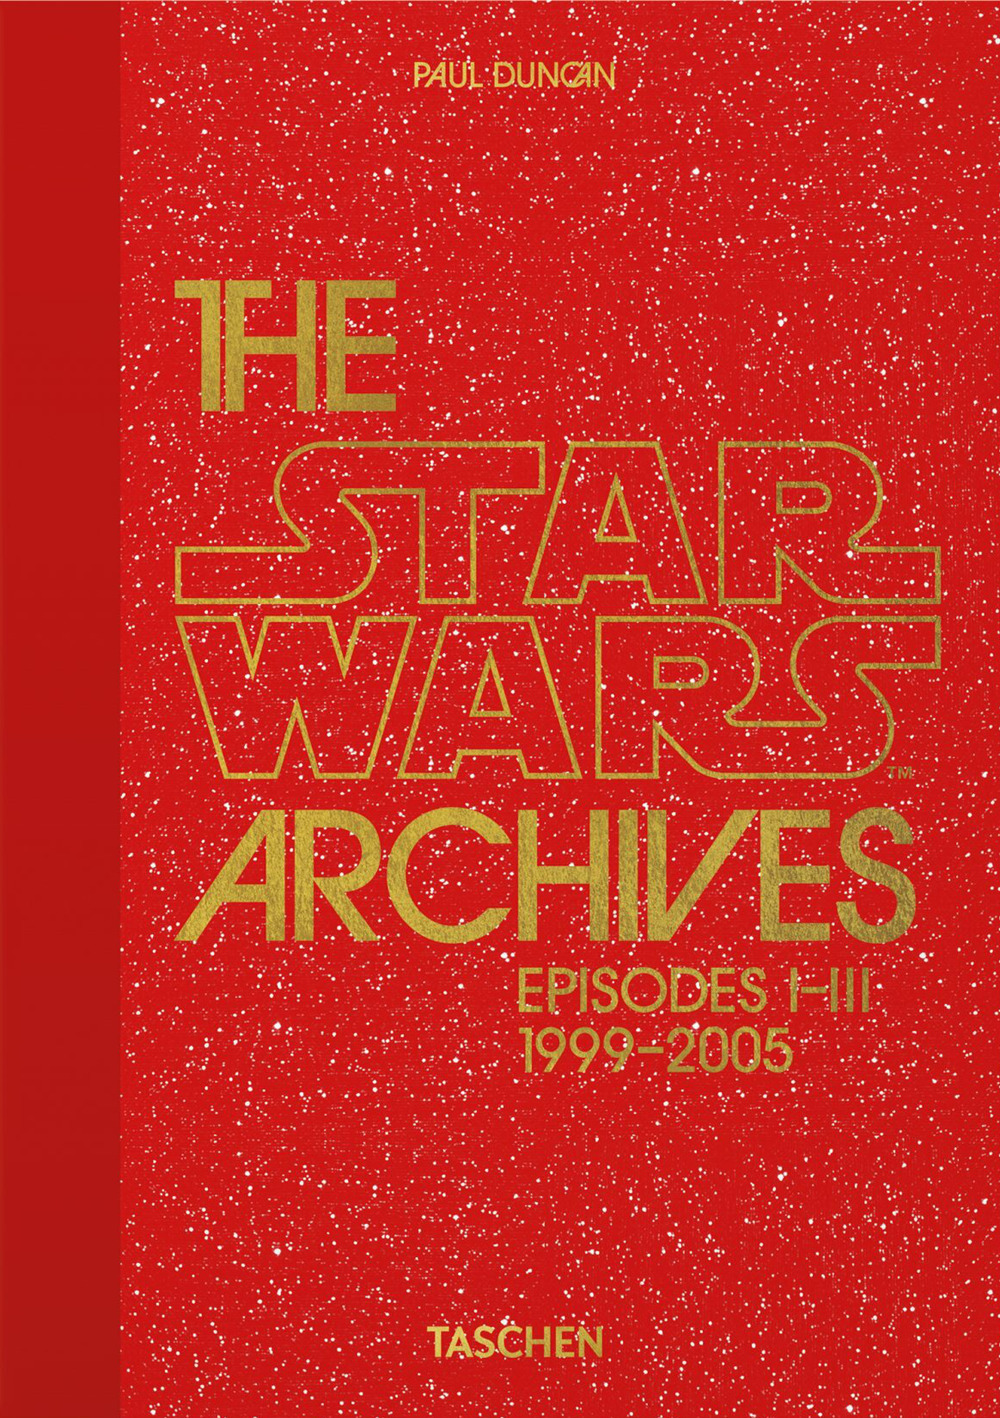 Libri Star Wars Archives. Episodes I-III 1999-2005. 40Th Anniversary (The) (English Edition) NUOVO SIGILLATO, EDIZIONE DEL 15/11/2022 SUBITO DISPONIBILE